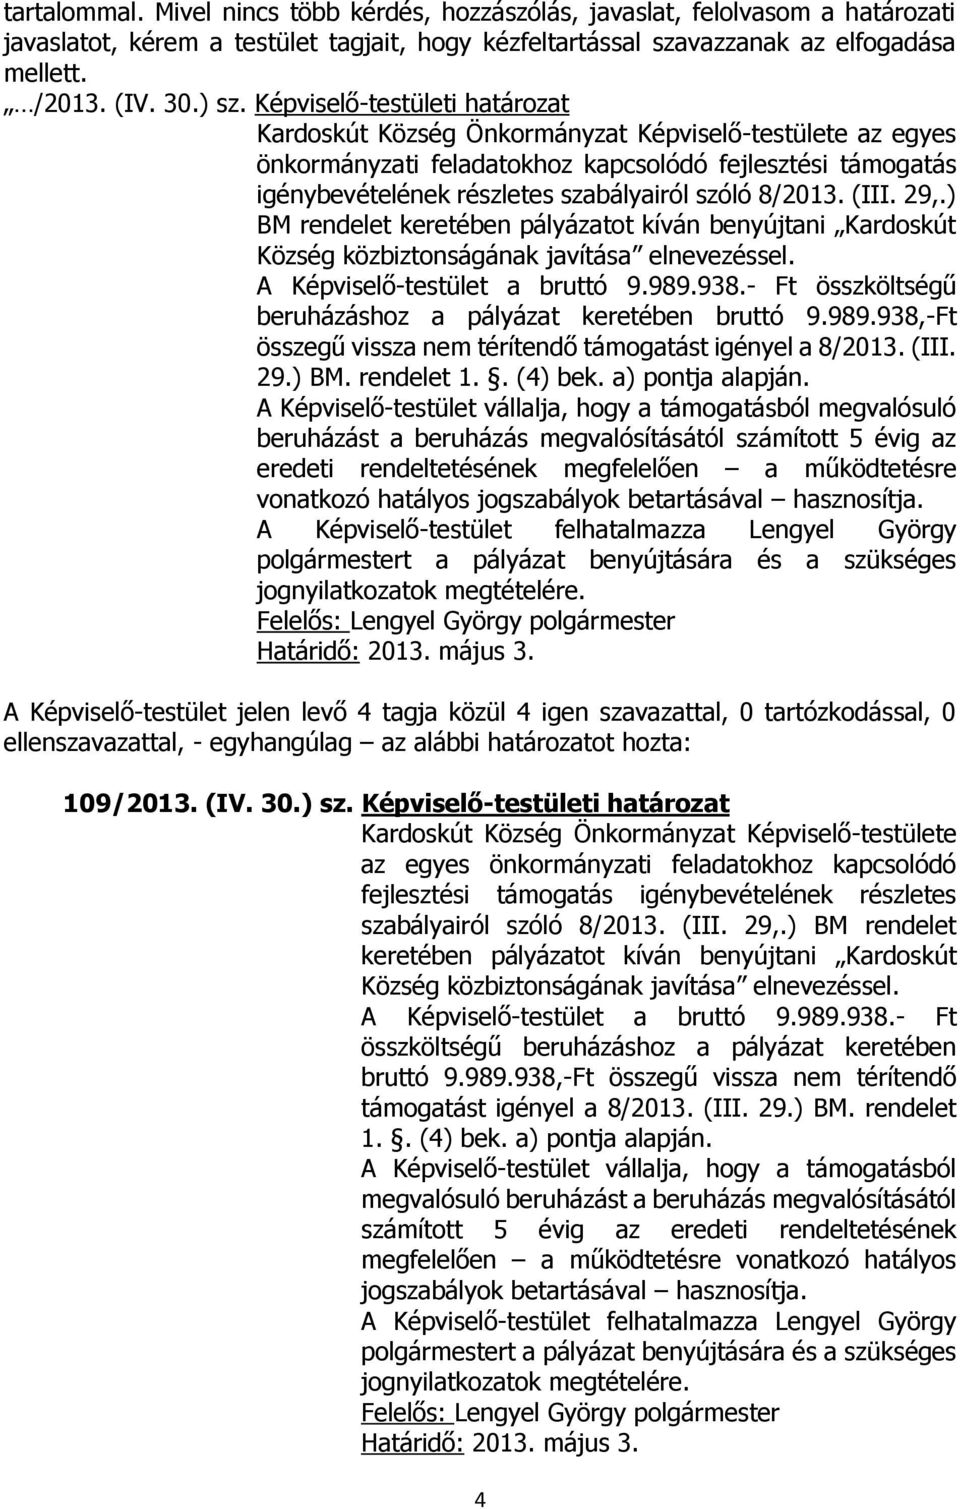 8/2013. (III. 29,.) BM rendelet keretében pályázatot kíván benyújtani Kardoskút Község közbiztonságának javítása elnevezéssel. A Képviselő-testület a bruttó 9.989.938.